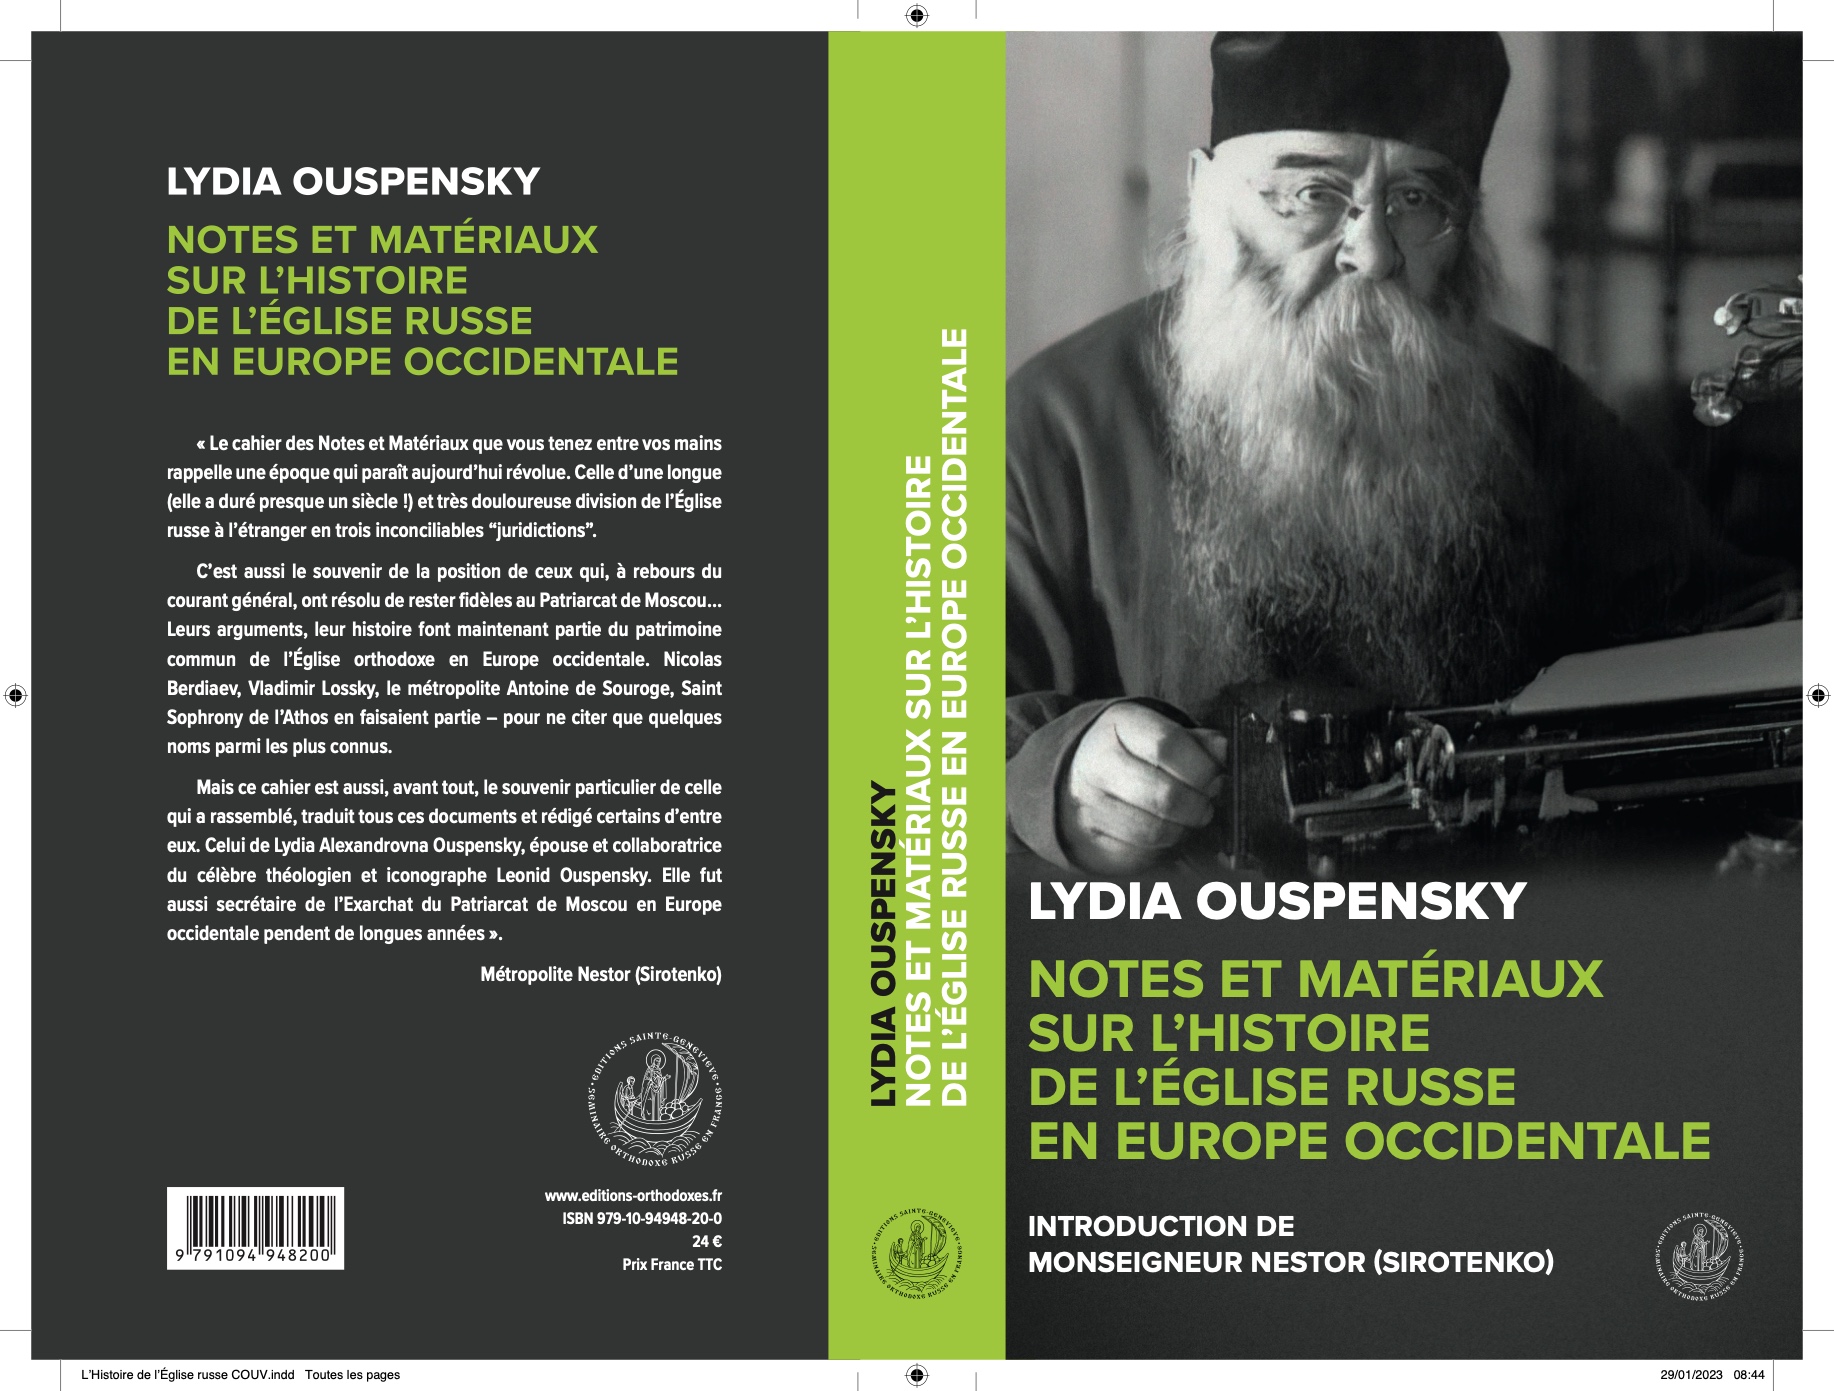 Parution du livre "Lydia OUSPENSKY, Note et matériaux sur l’Histoire de l’Église russe en Europe occidentale"